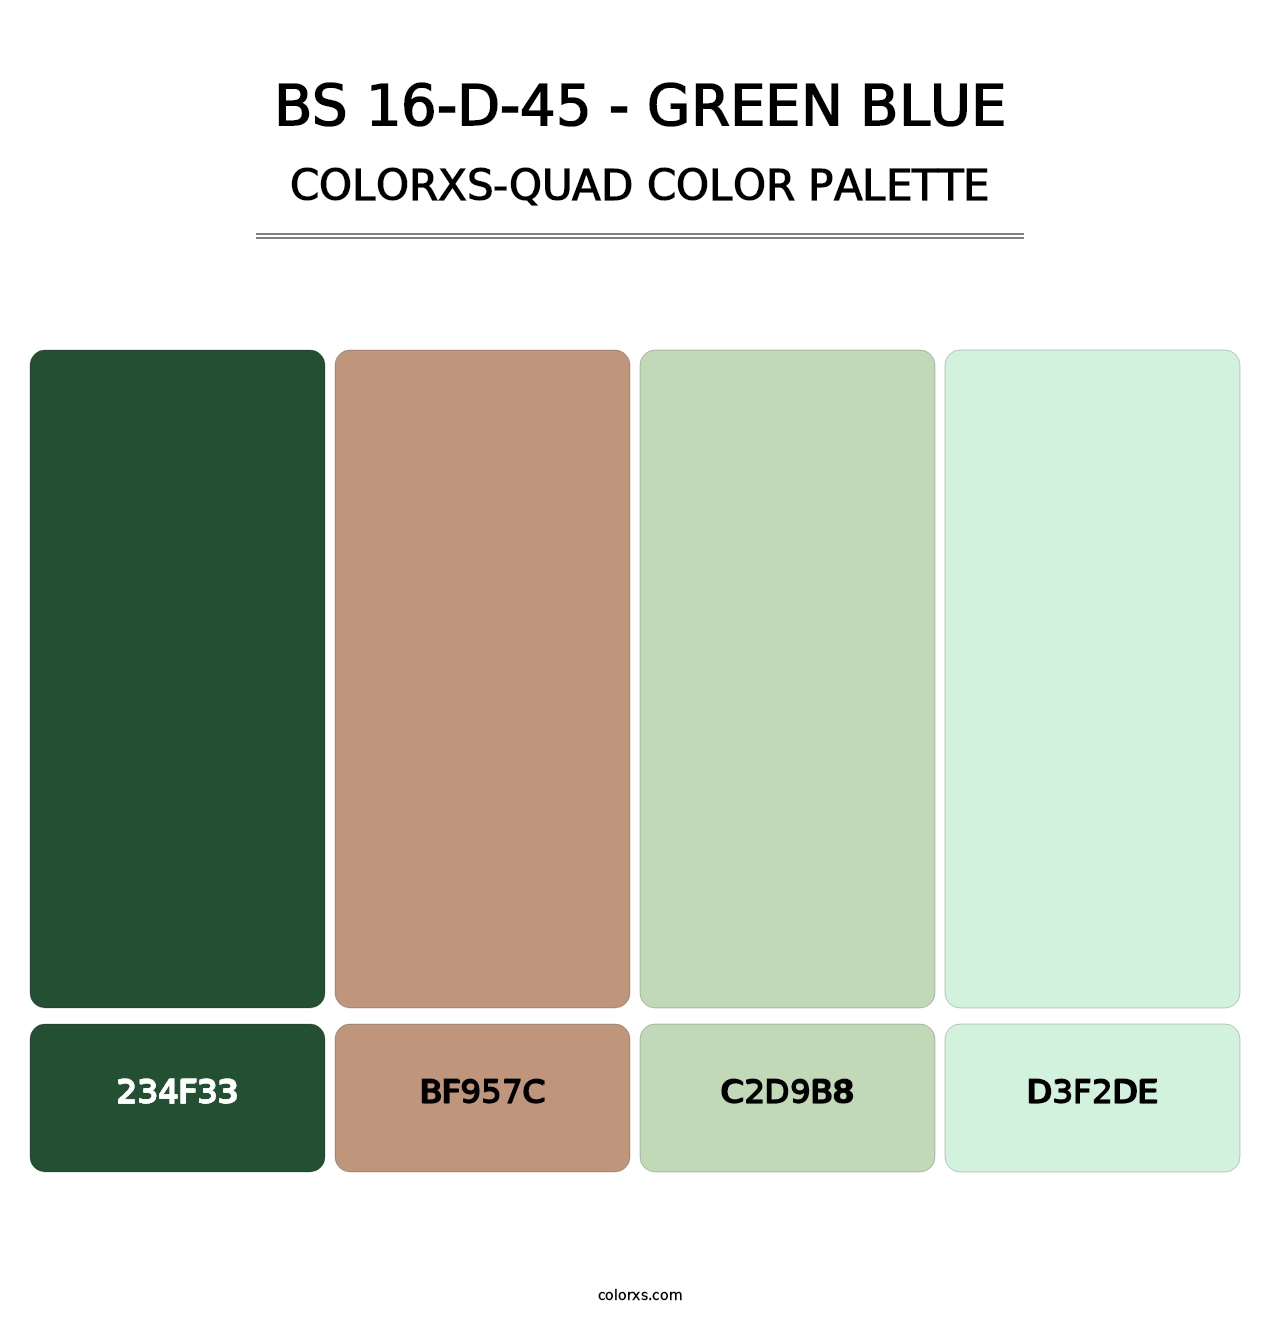 BS 16-D-45 - Green Blue - Colorxs Quad Palette